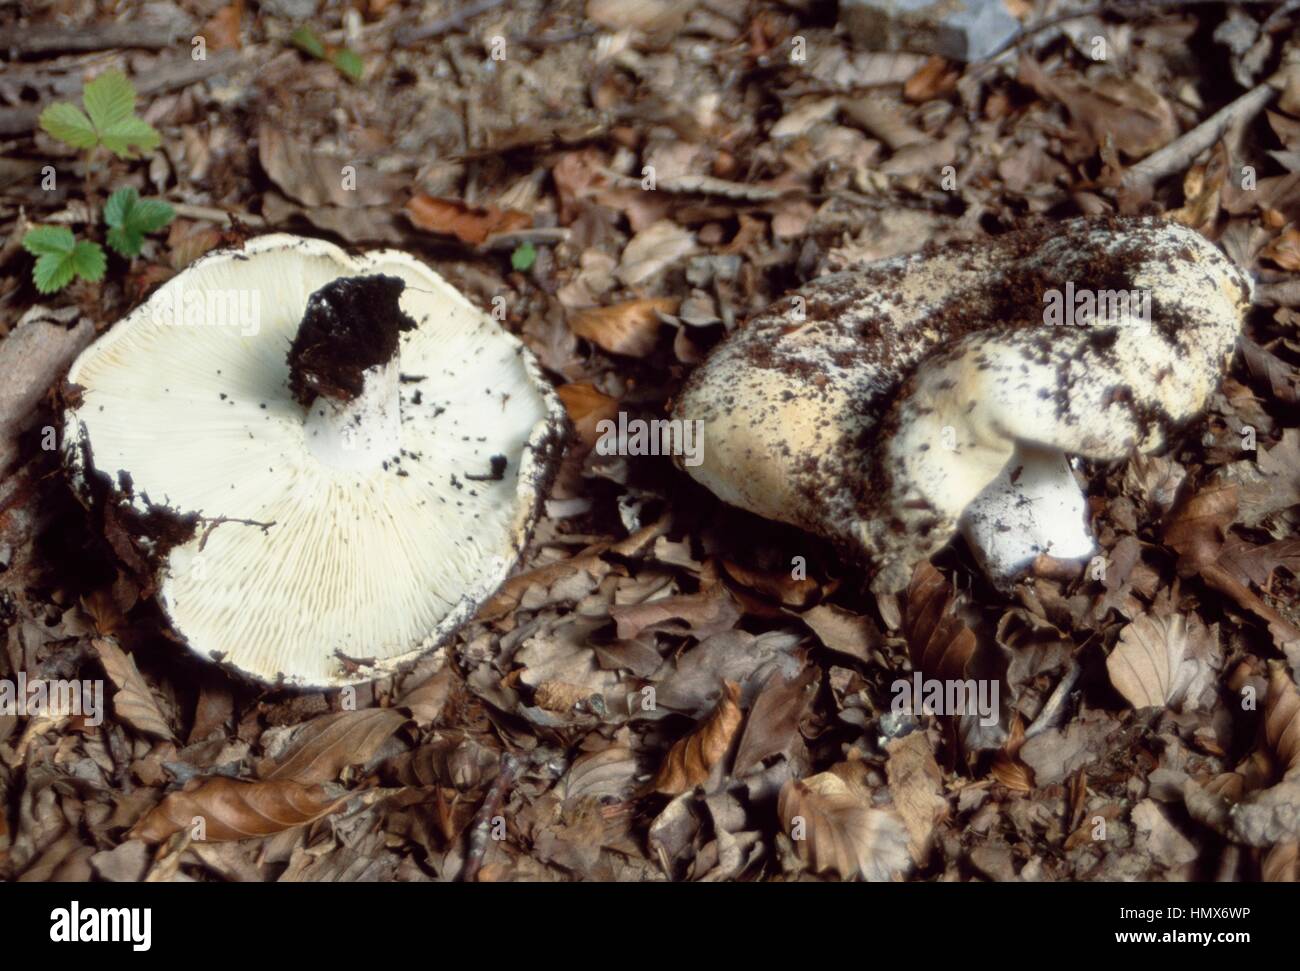 Milk-white brittlegill (Russula delica), Russulaceae. Stock Photo